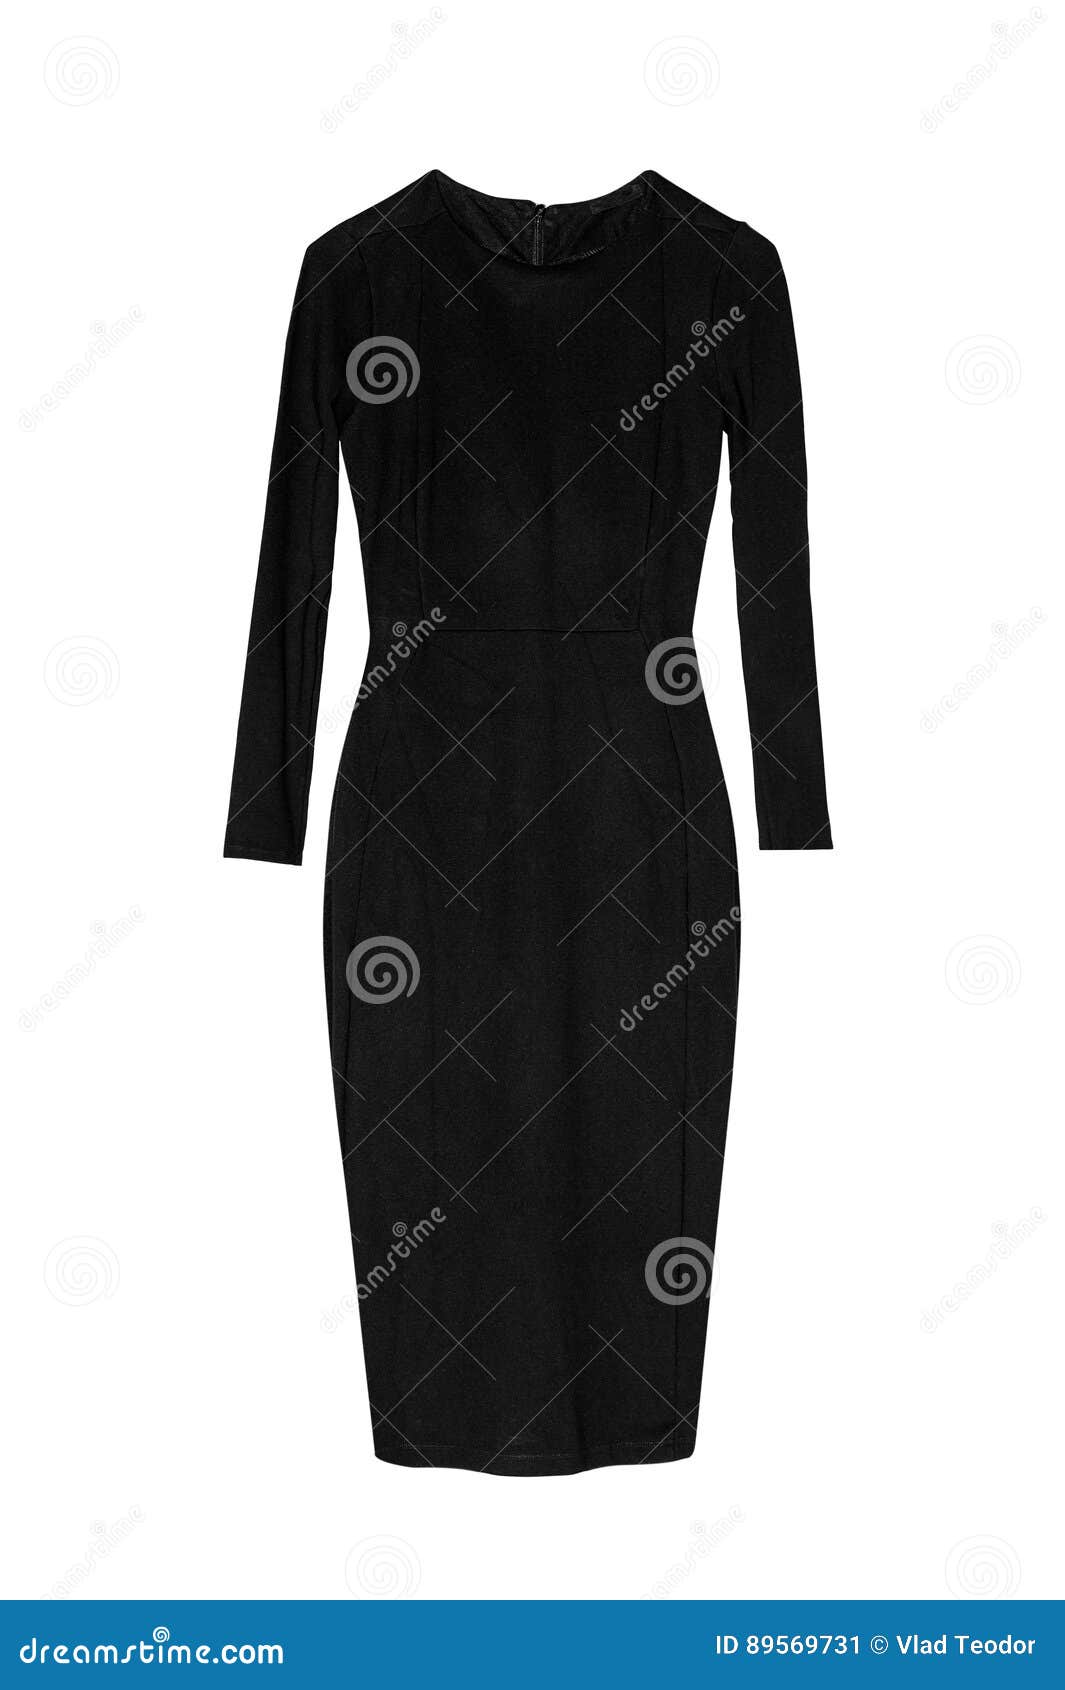 Vestido Negro Del Lápiz Con Las Mangas Largas de archivo - Imagen de alineada, 89569731